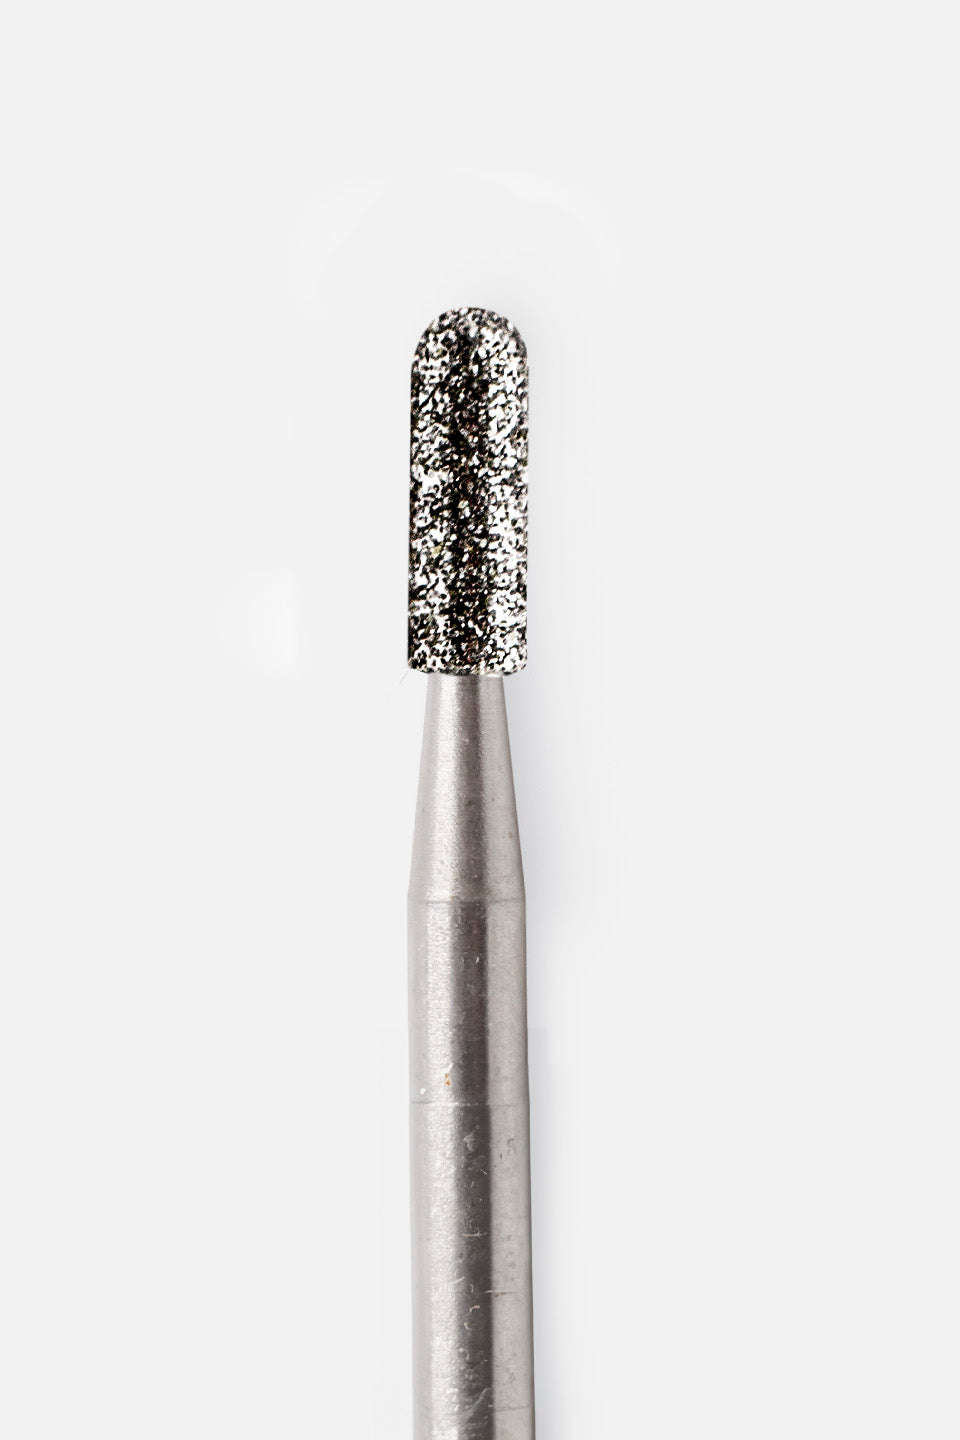 Fresa micromotor de diamante cilíndrica redonda gr. medio